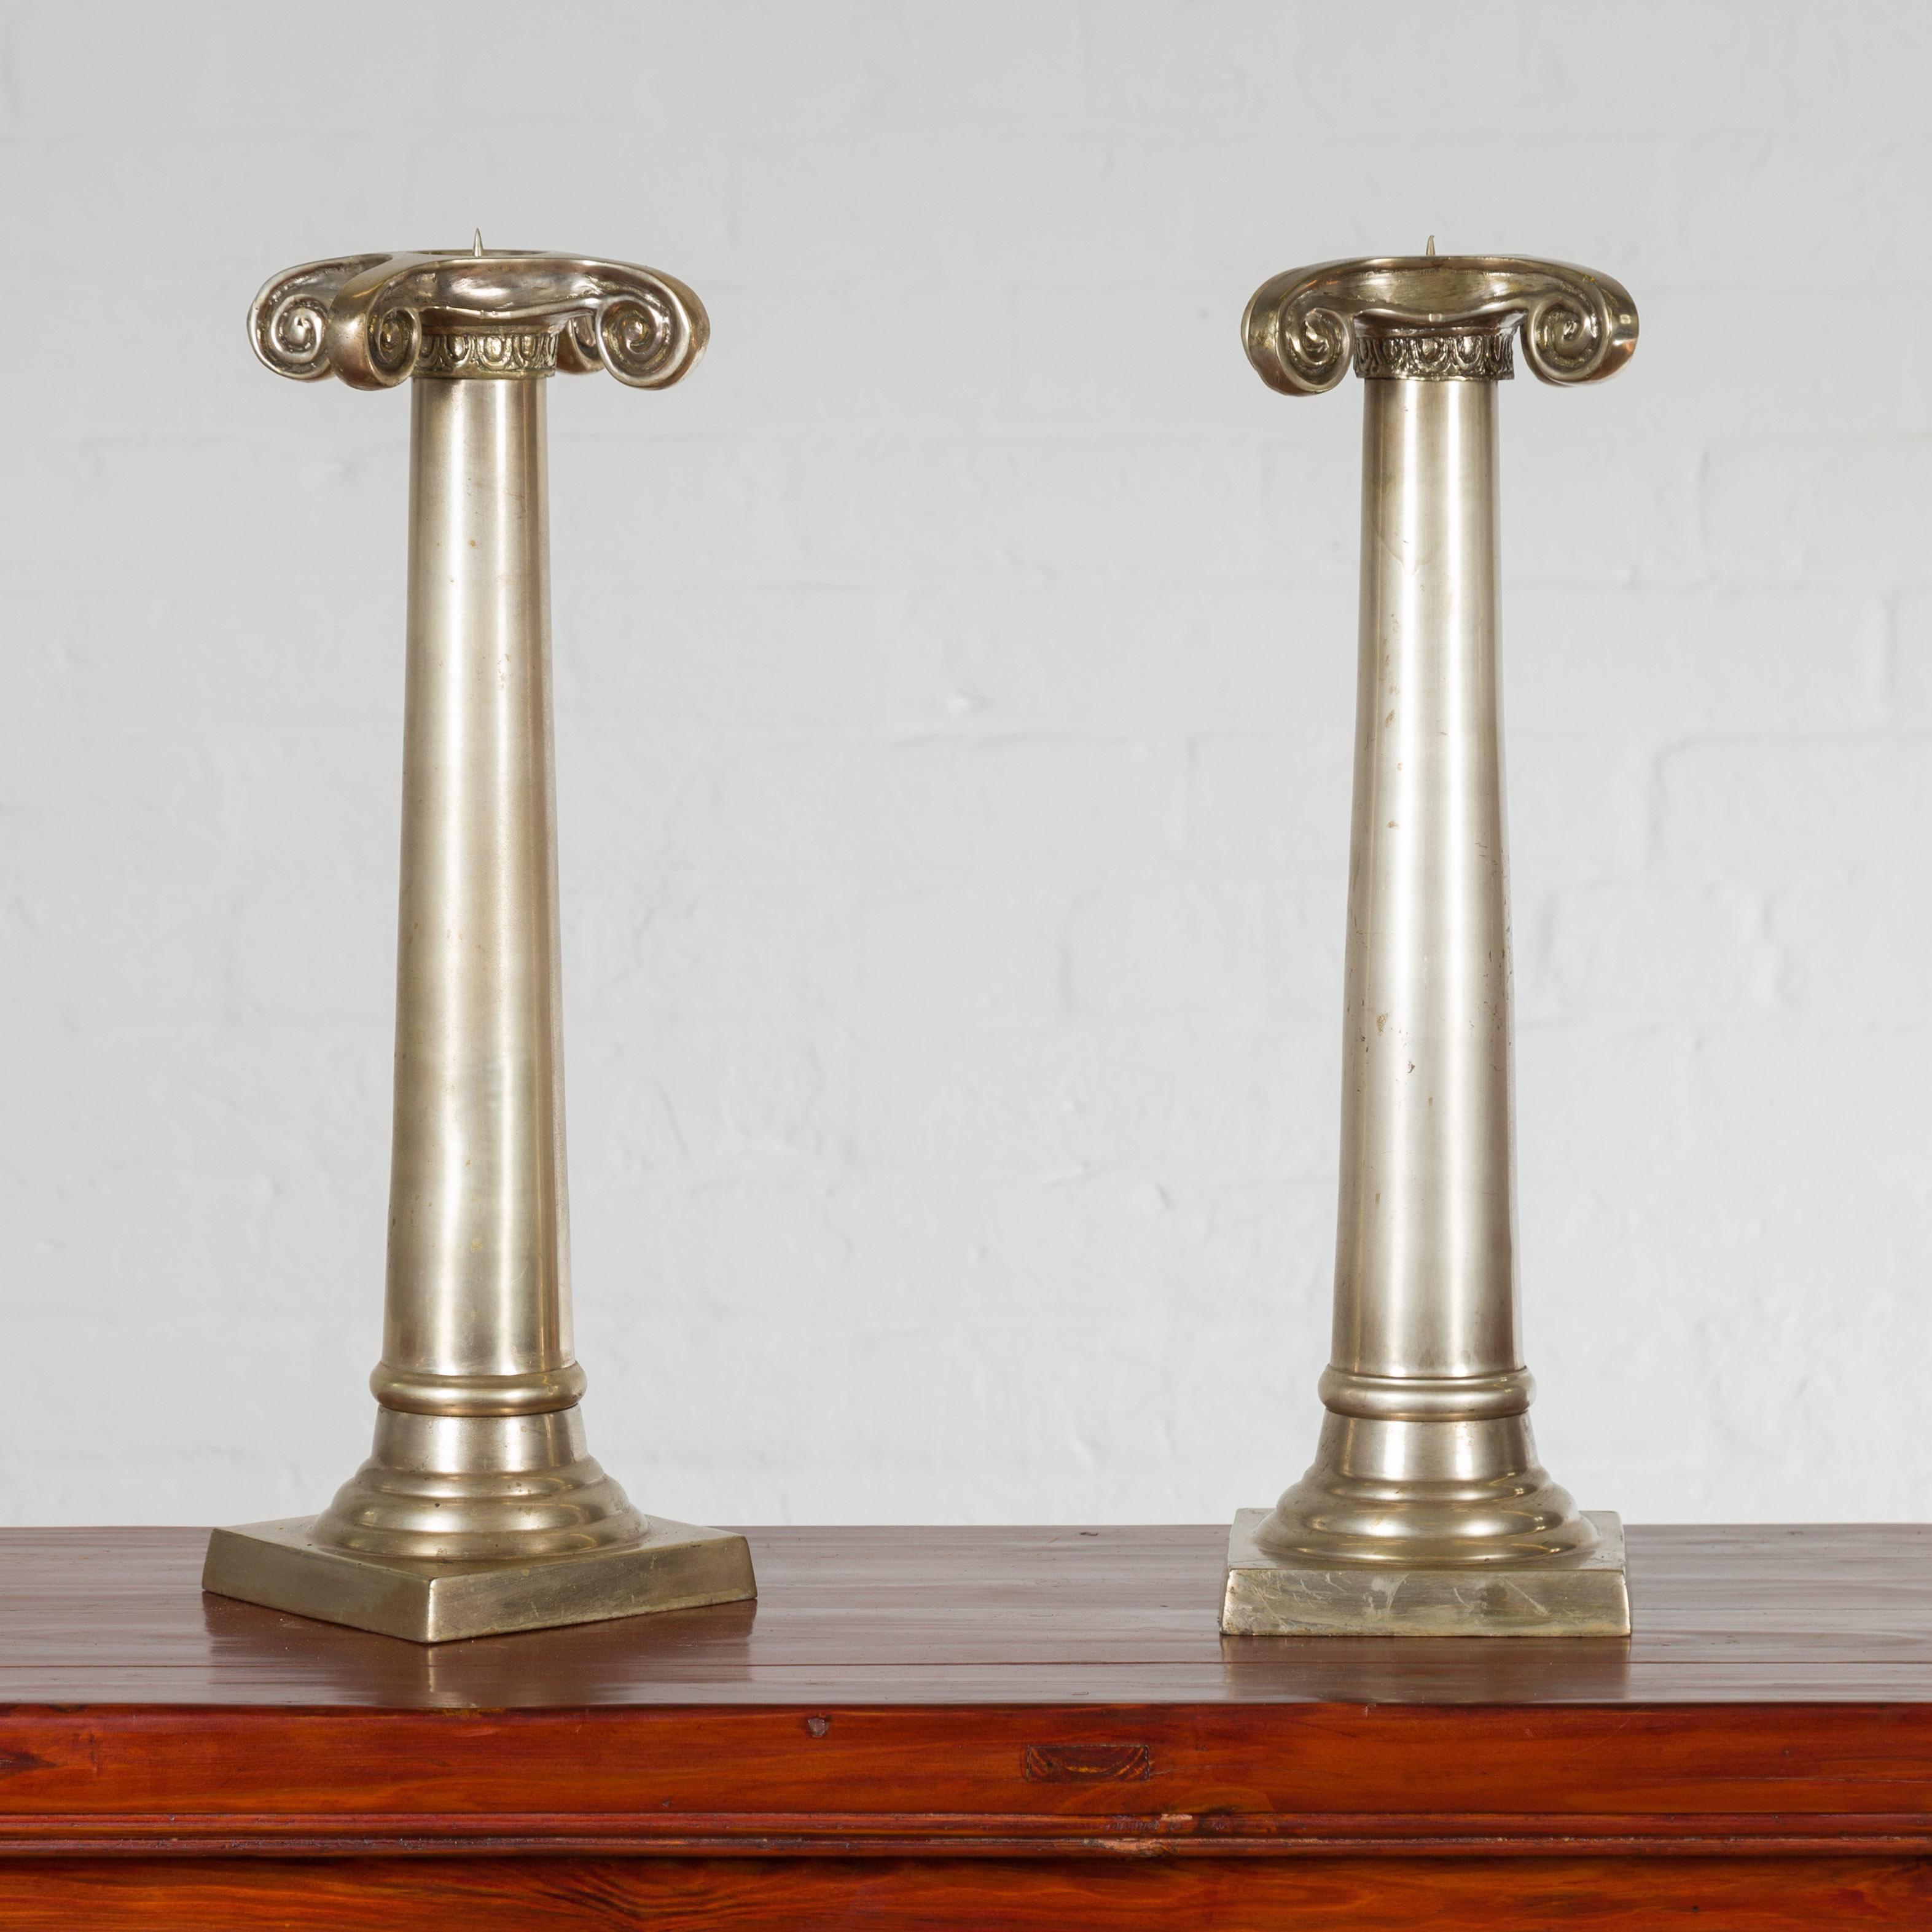 Paire de chandeliers thaïlandais en argent brossé et bronze du milieu du 20e siècle, avec des chapiteaux ioniques. Créée au milieu du siècle dernier, cette paire de chandeliers thaïlandais présente une colonne épurée surmontée d'un grand chapiteau